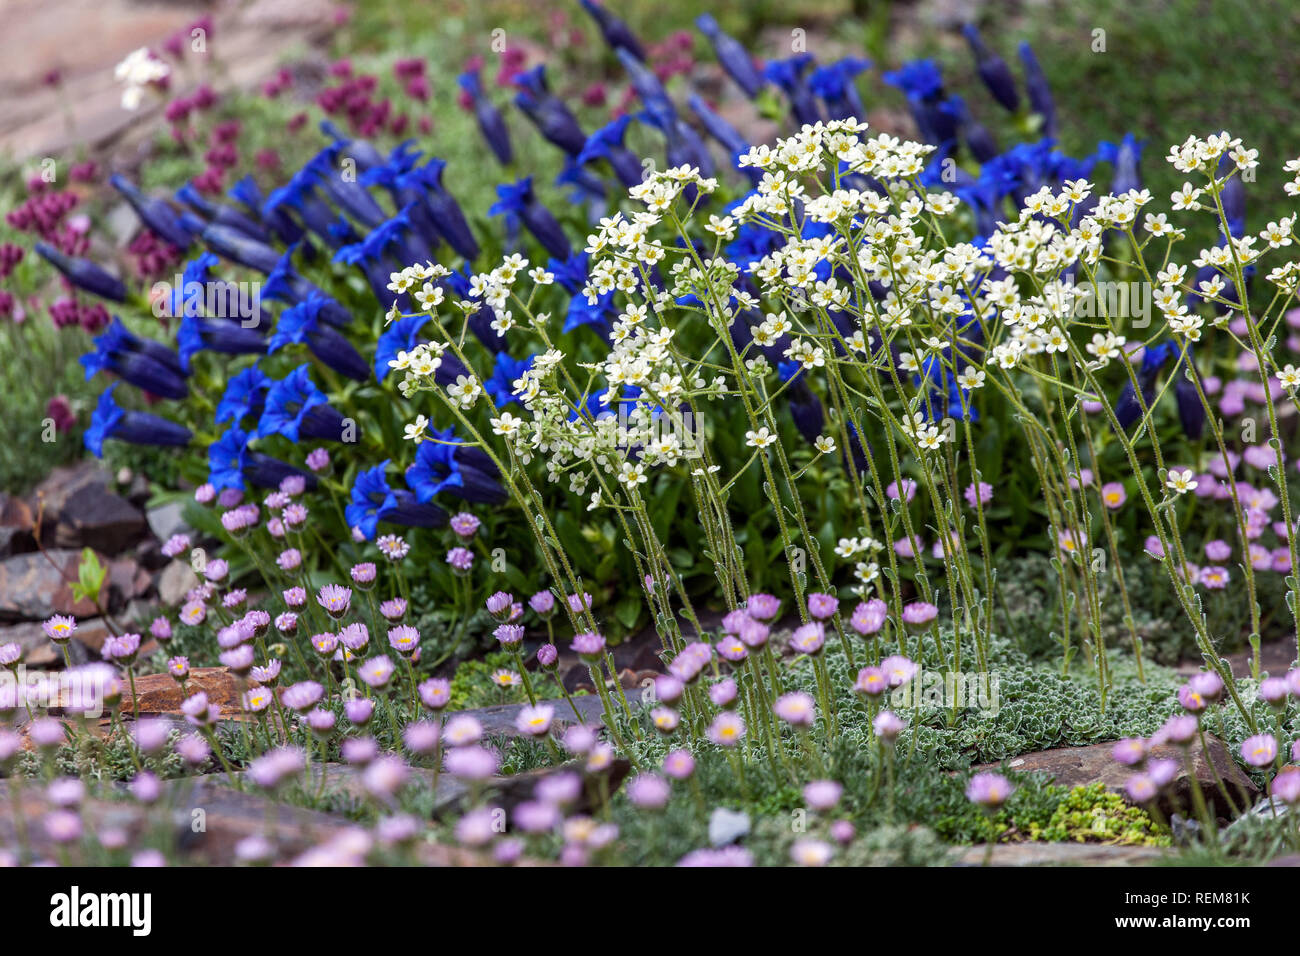 Plants in rockery garden, Blue Stemless Gentian Alpine Saxifrage, ground cover plants in garden alpine plants Stock Photo